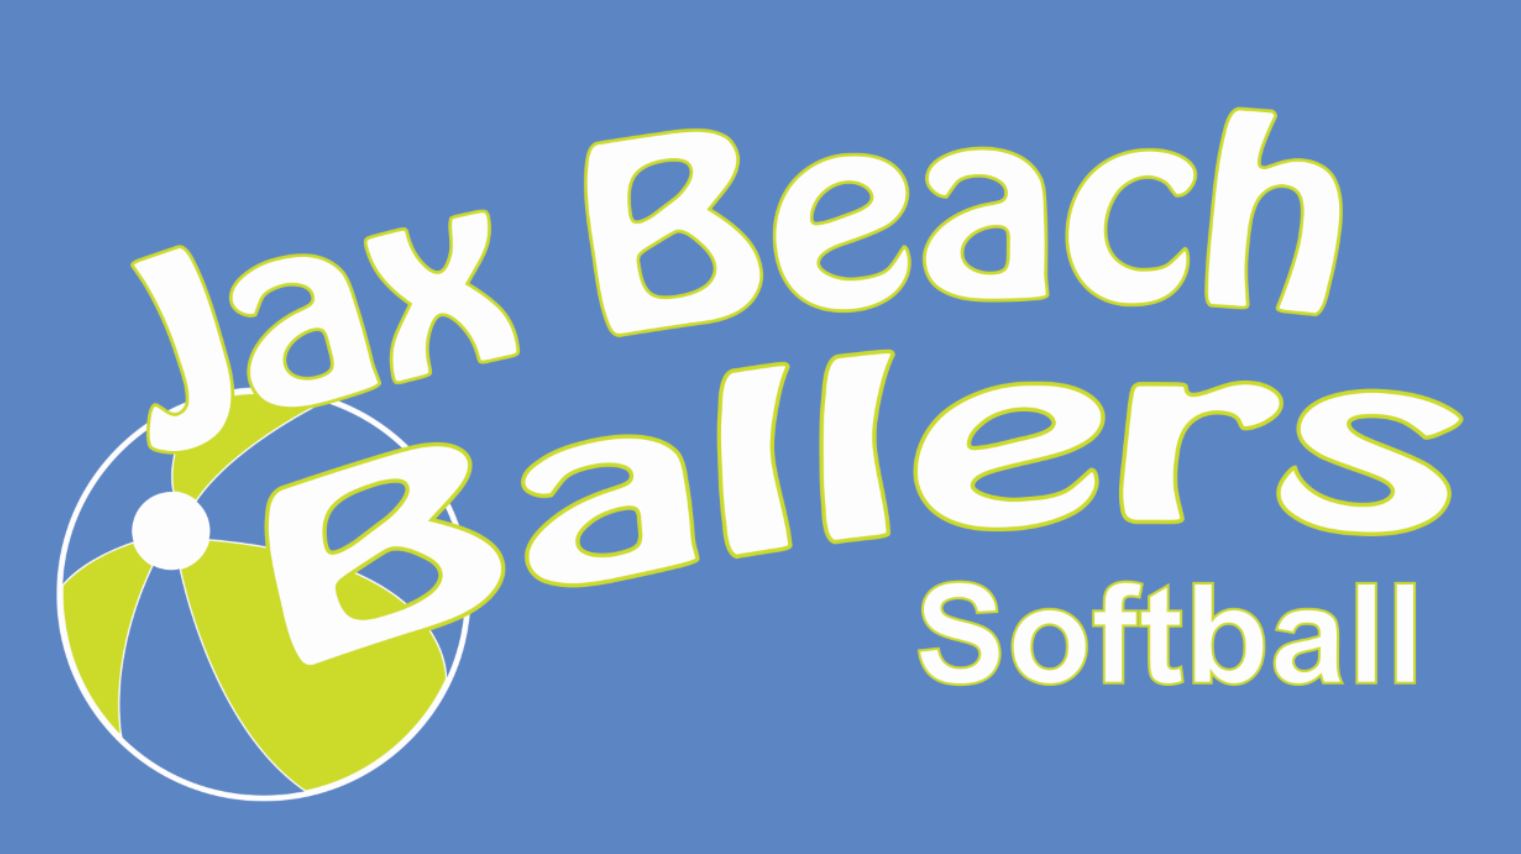 Jax Beach Beach Ballers Top